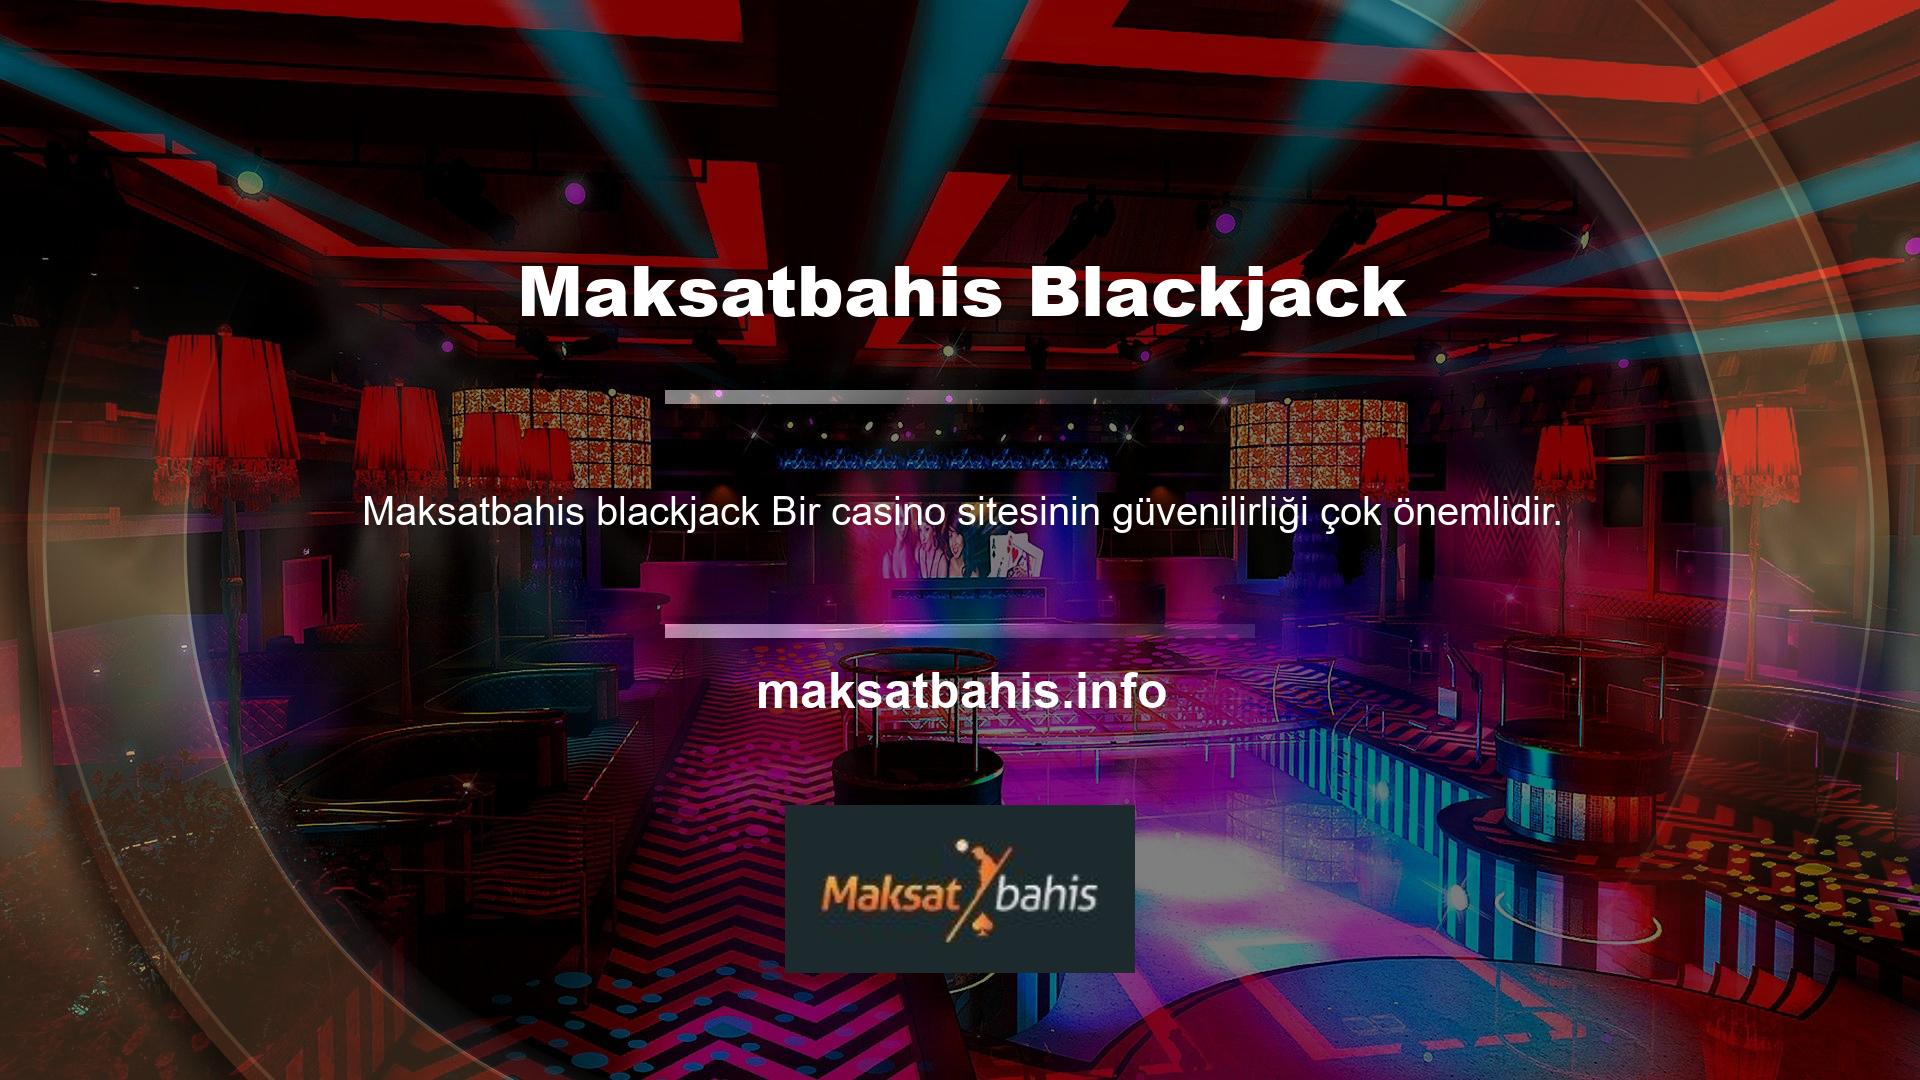 Maksatbahis web sitesi, güvenilirliği ile tanınan bir casino şirketidir